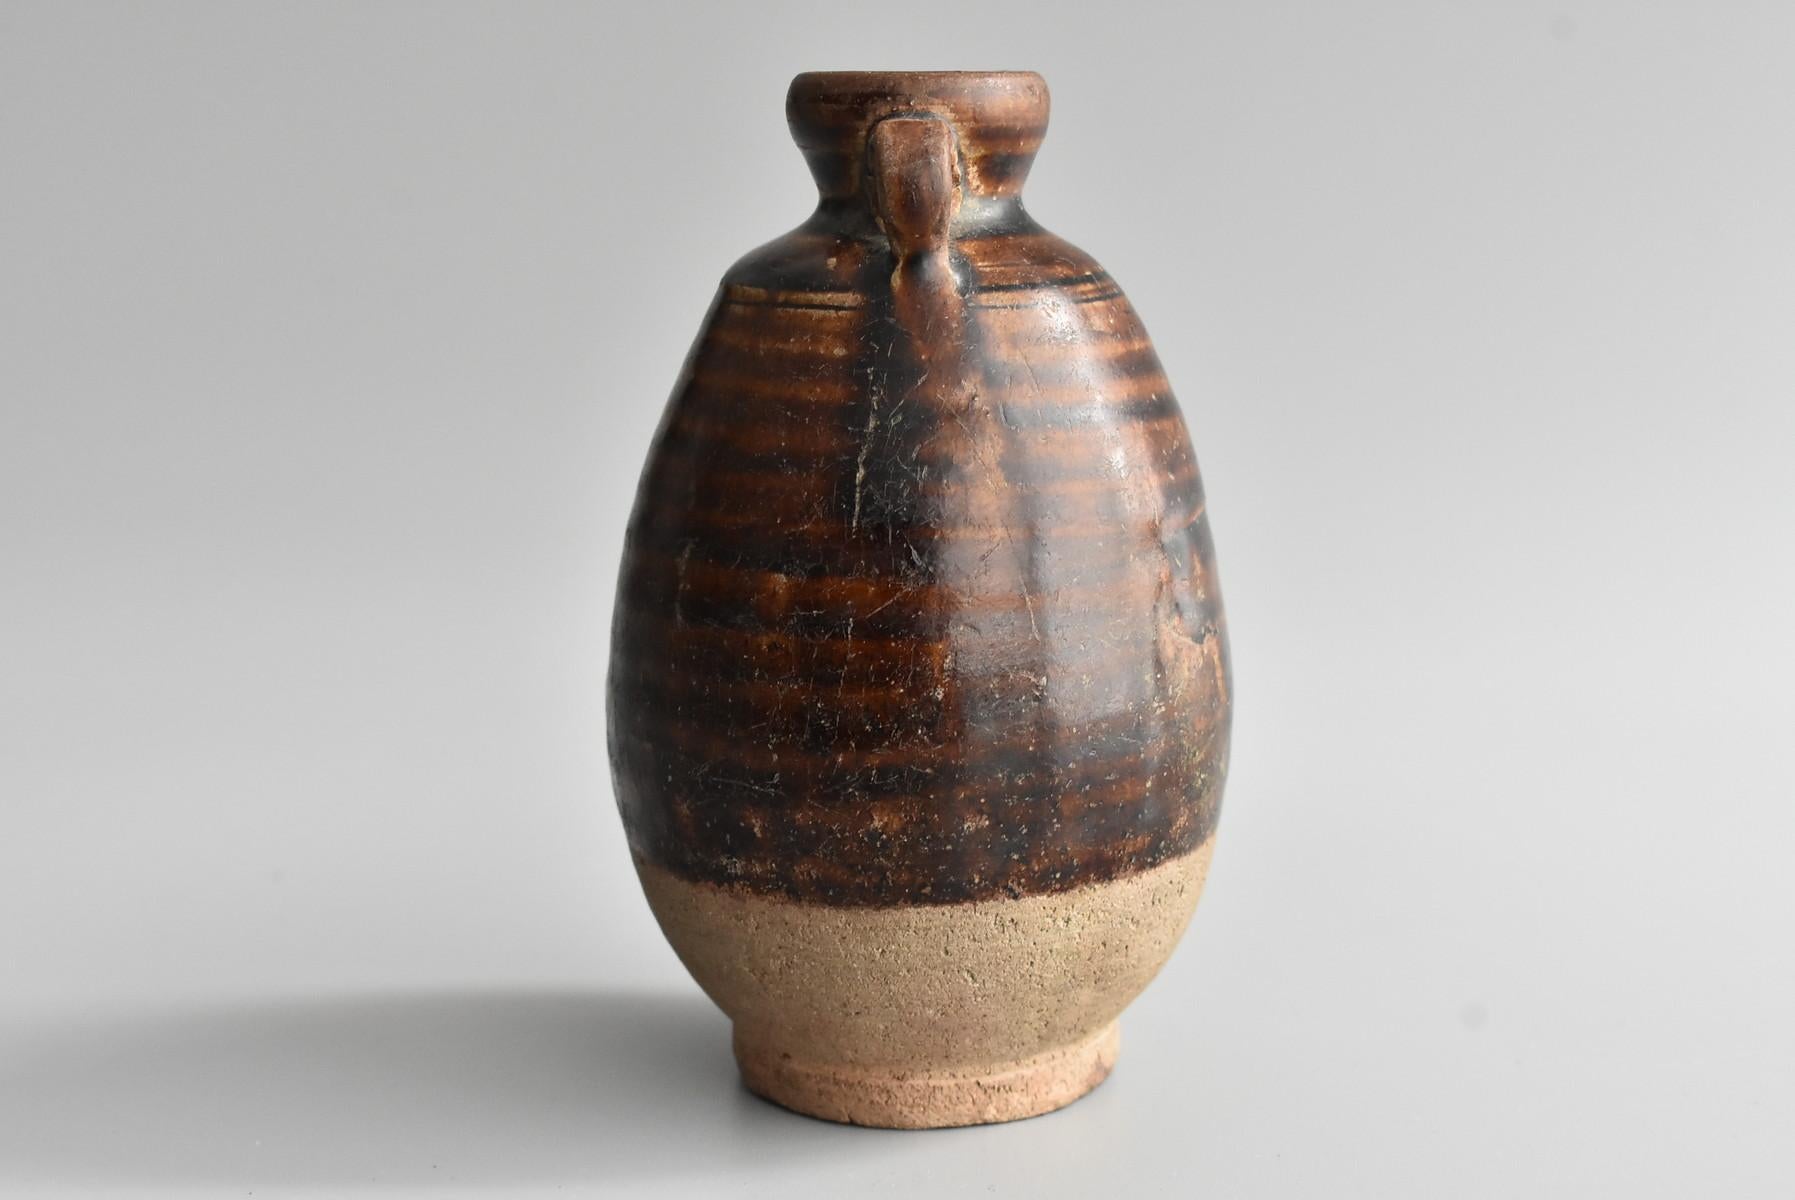 Glazed Thai Antique Bottle 15th Century / Old Vase / Southeast Asian Antiques